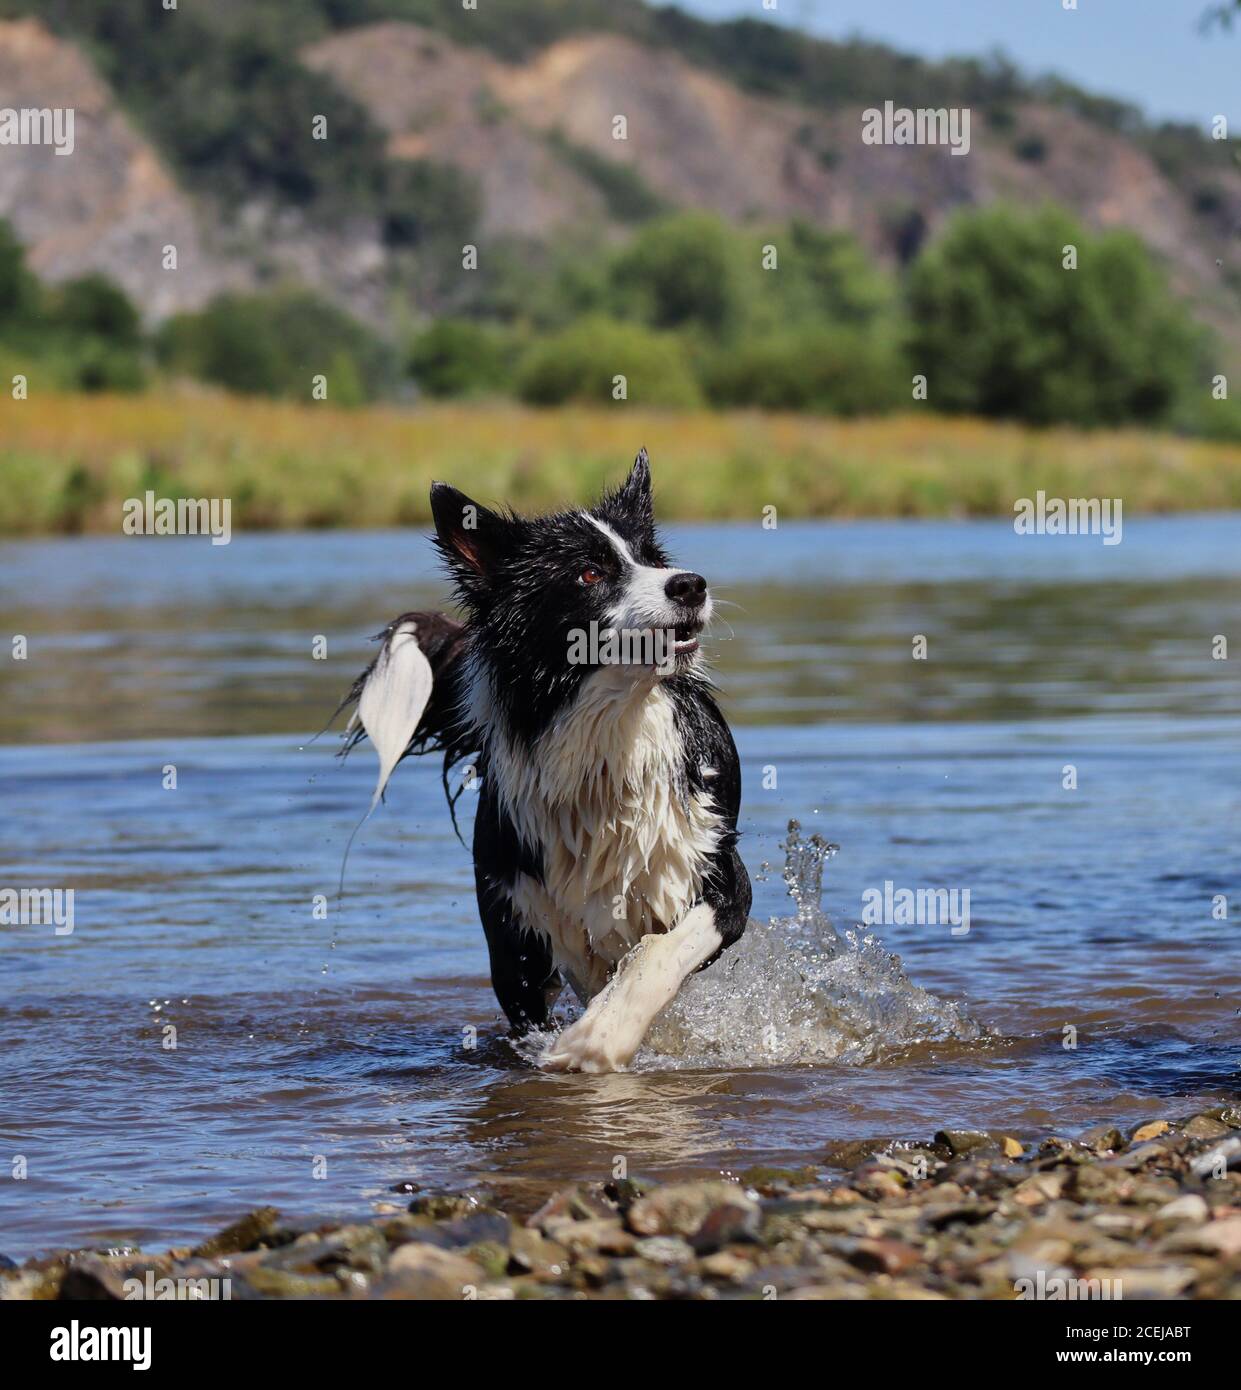 Aufmerksame Wet Border Collie wartet auf Spiel in der Tschechischen Fluss. Black and White Dog genießt Spaß am Wasser. Stockfoto